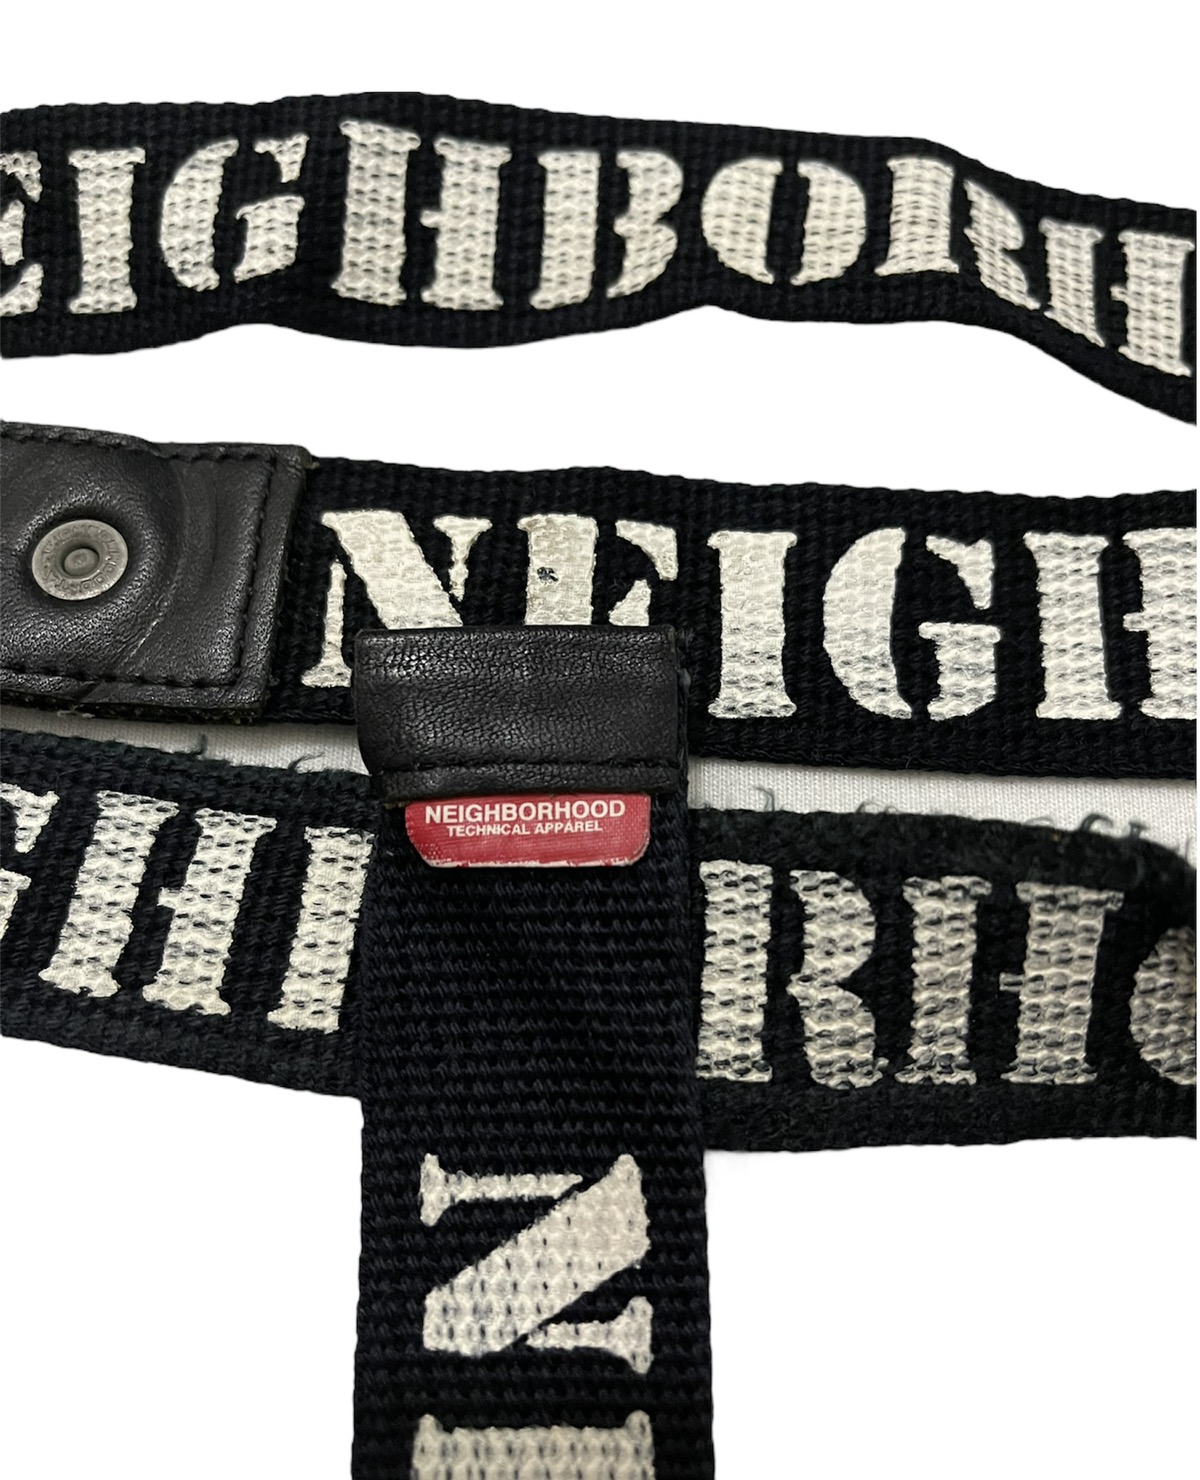 Neighborhood belt nbhd the magnificent seven belt - 5